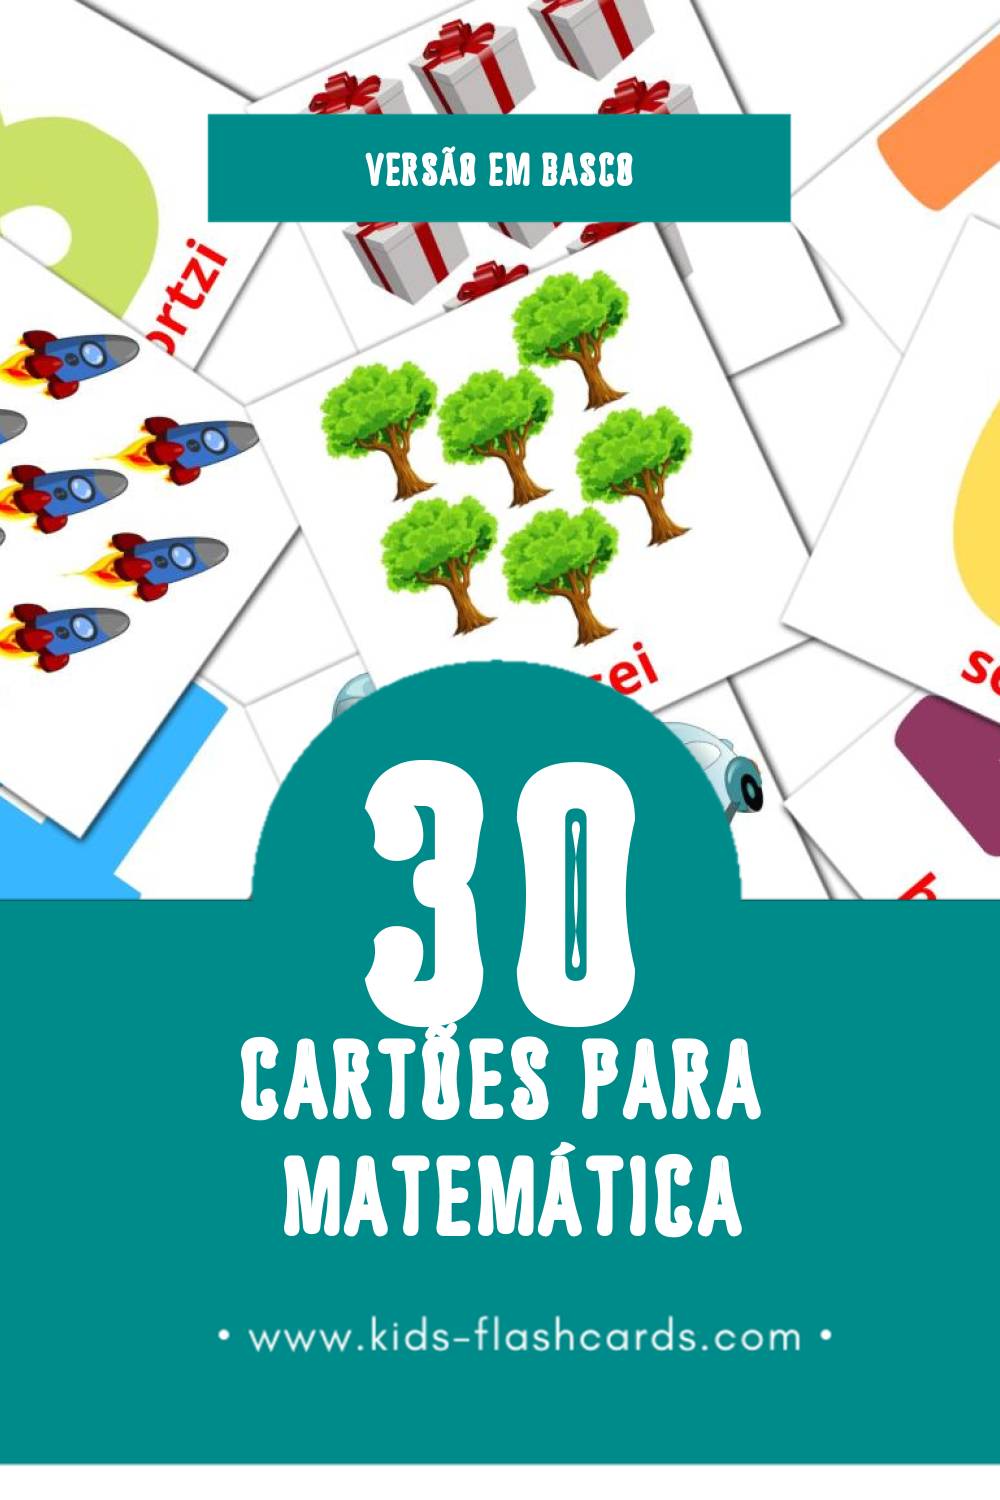 Flashcards de Matematikak Visuais para Toddlers (30 cartões em Basco)